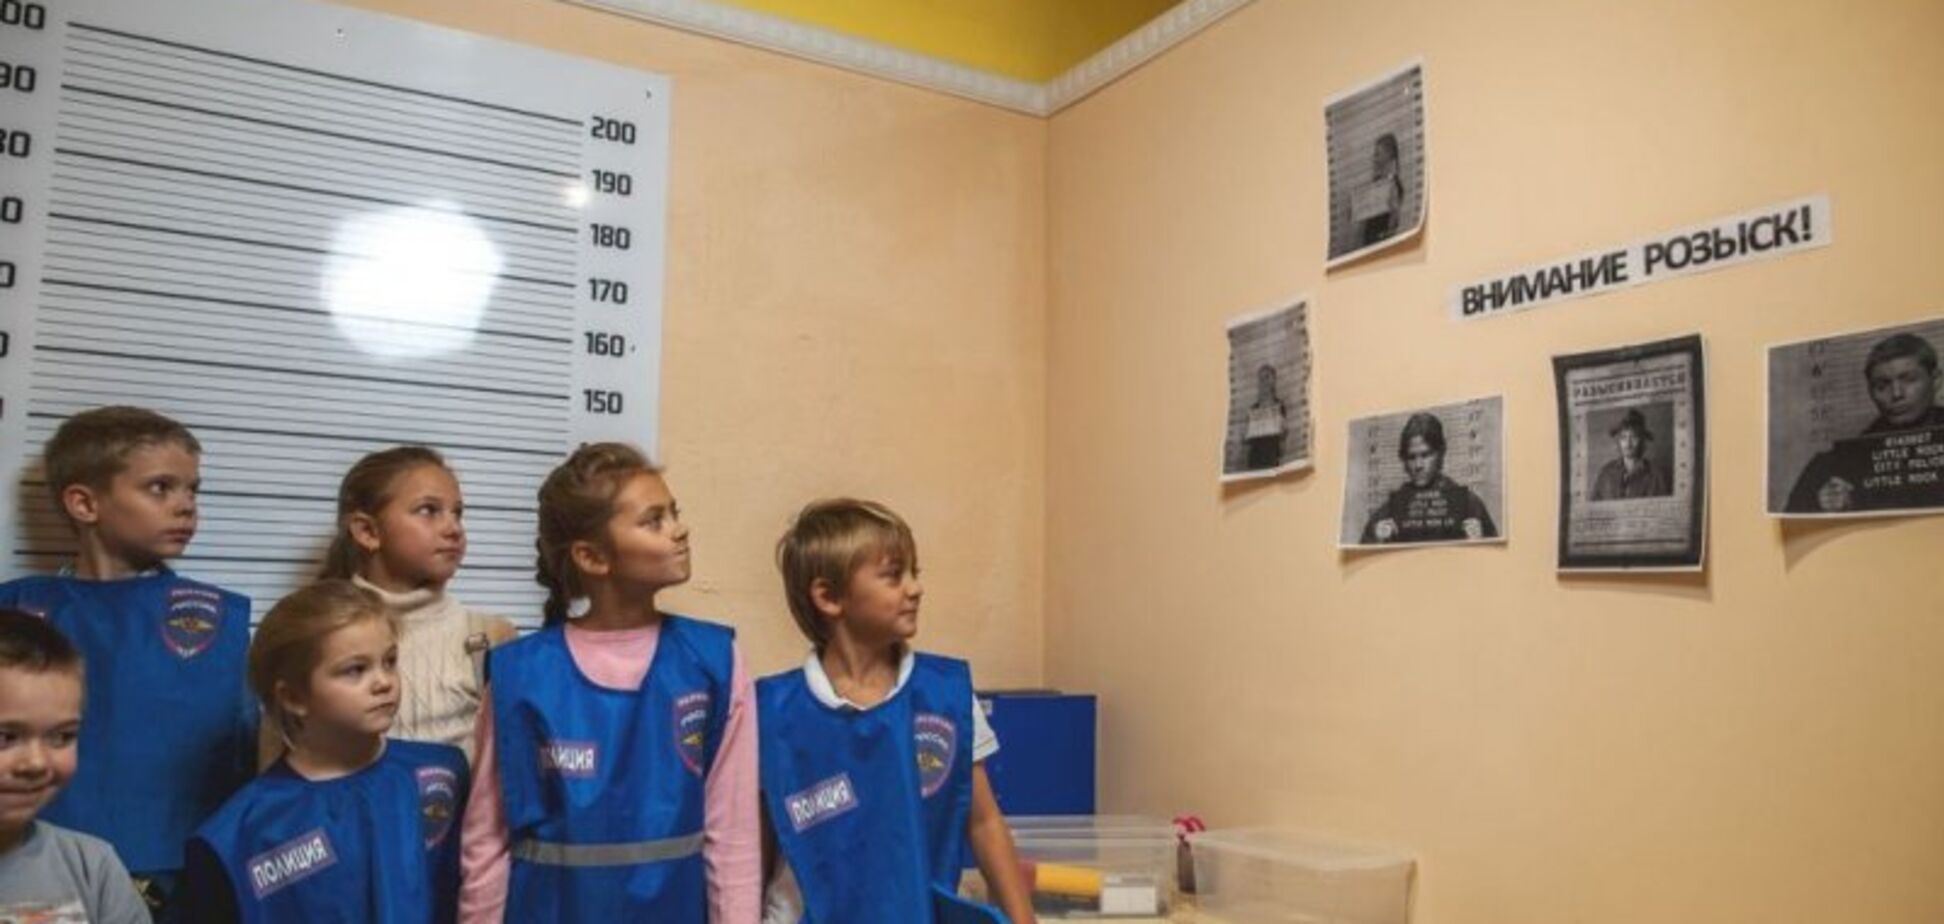 Вырядили в робу и поставили к стенке: в России силовики провели странную игру со школьниками